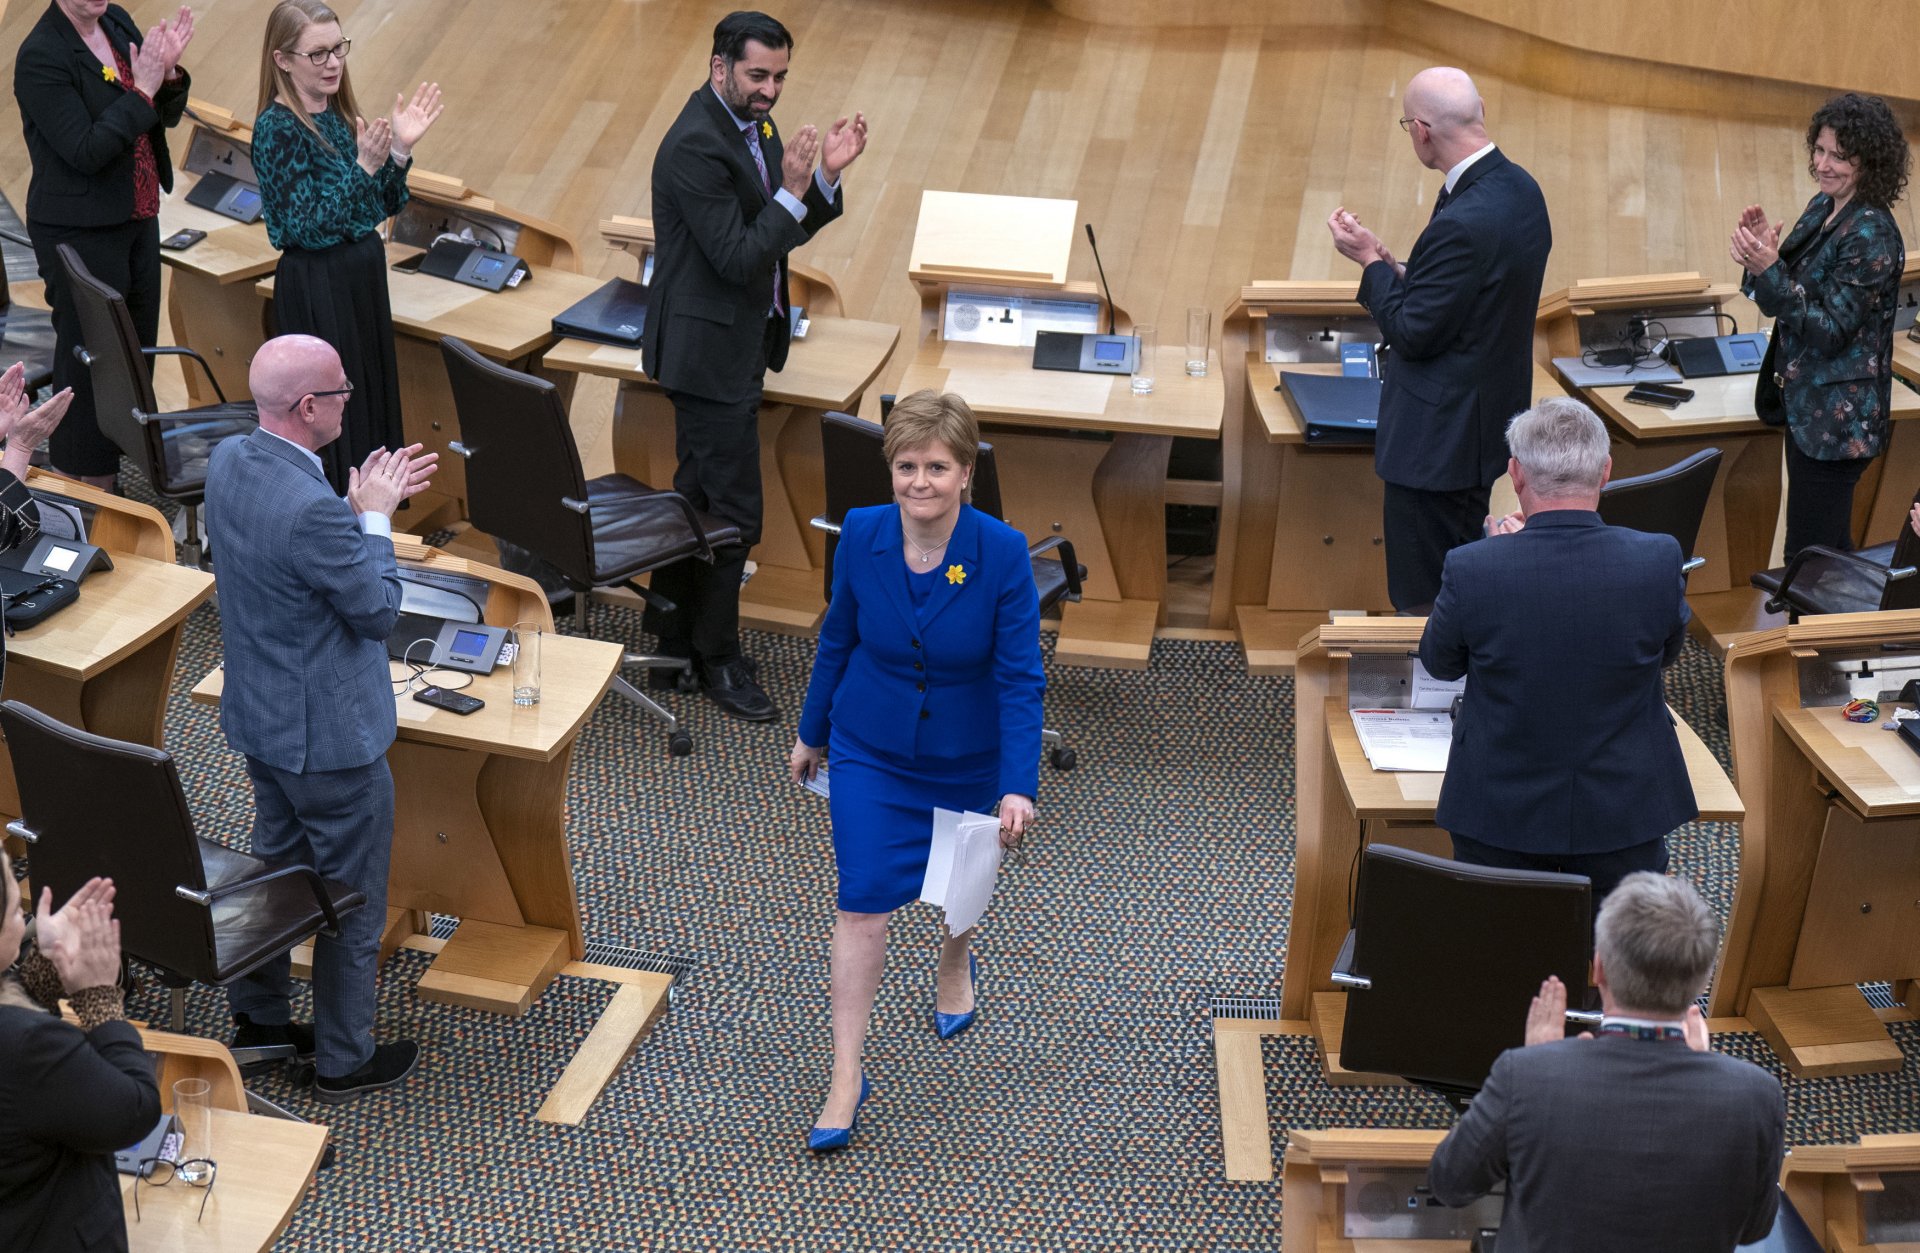 Никола Стърджън след последната си реч в парламента на Шотландия в качеството си на първи министър на страната, 23 март 2023 г.